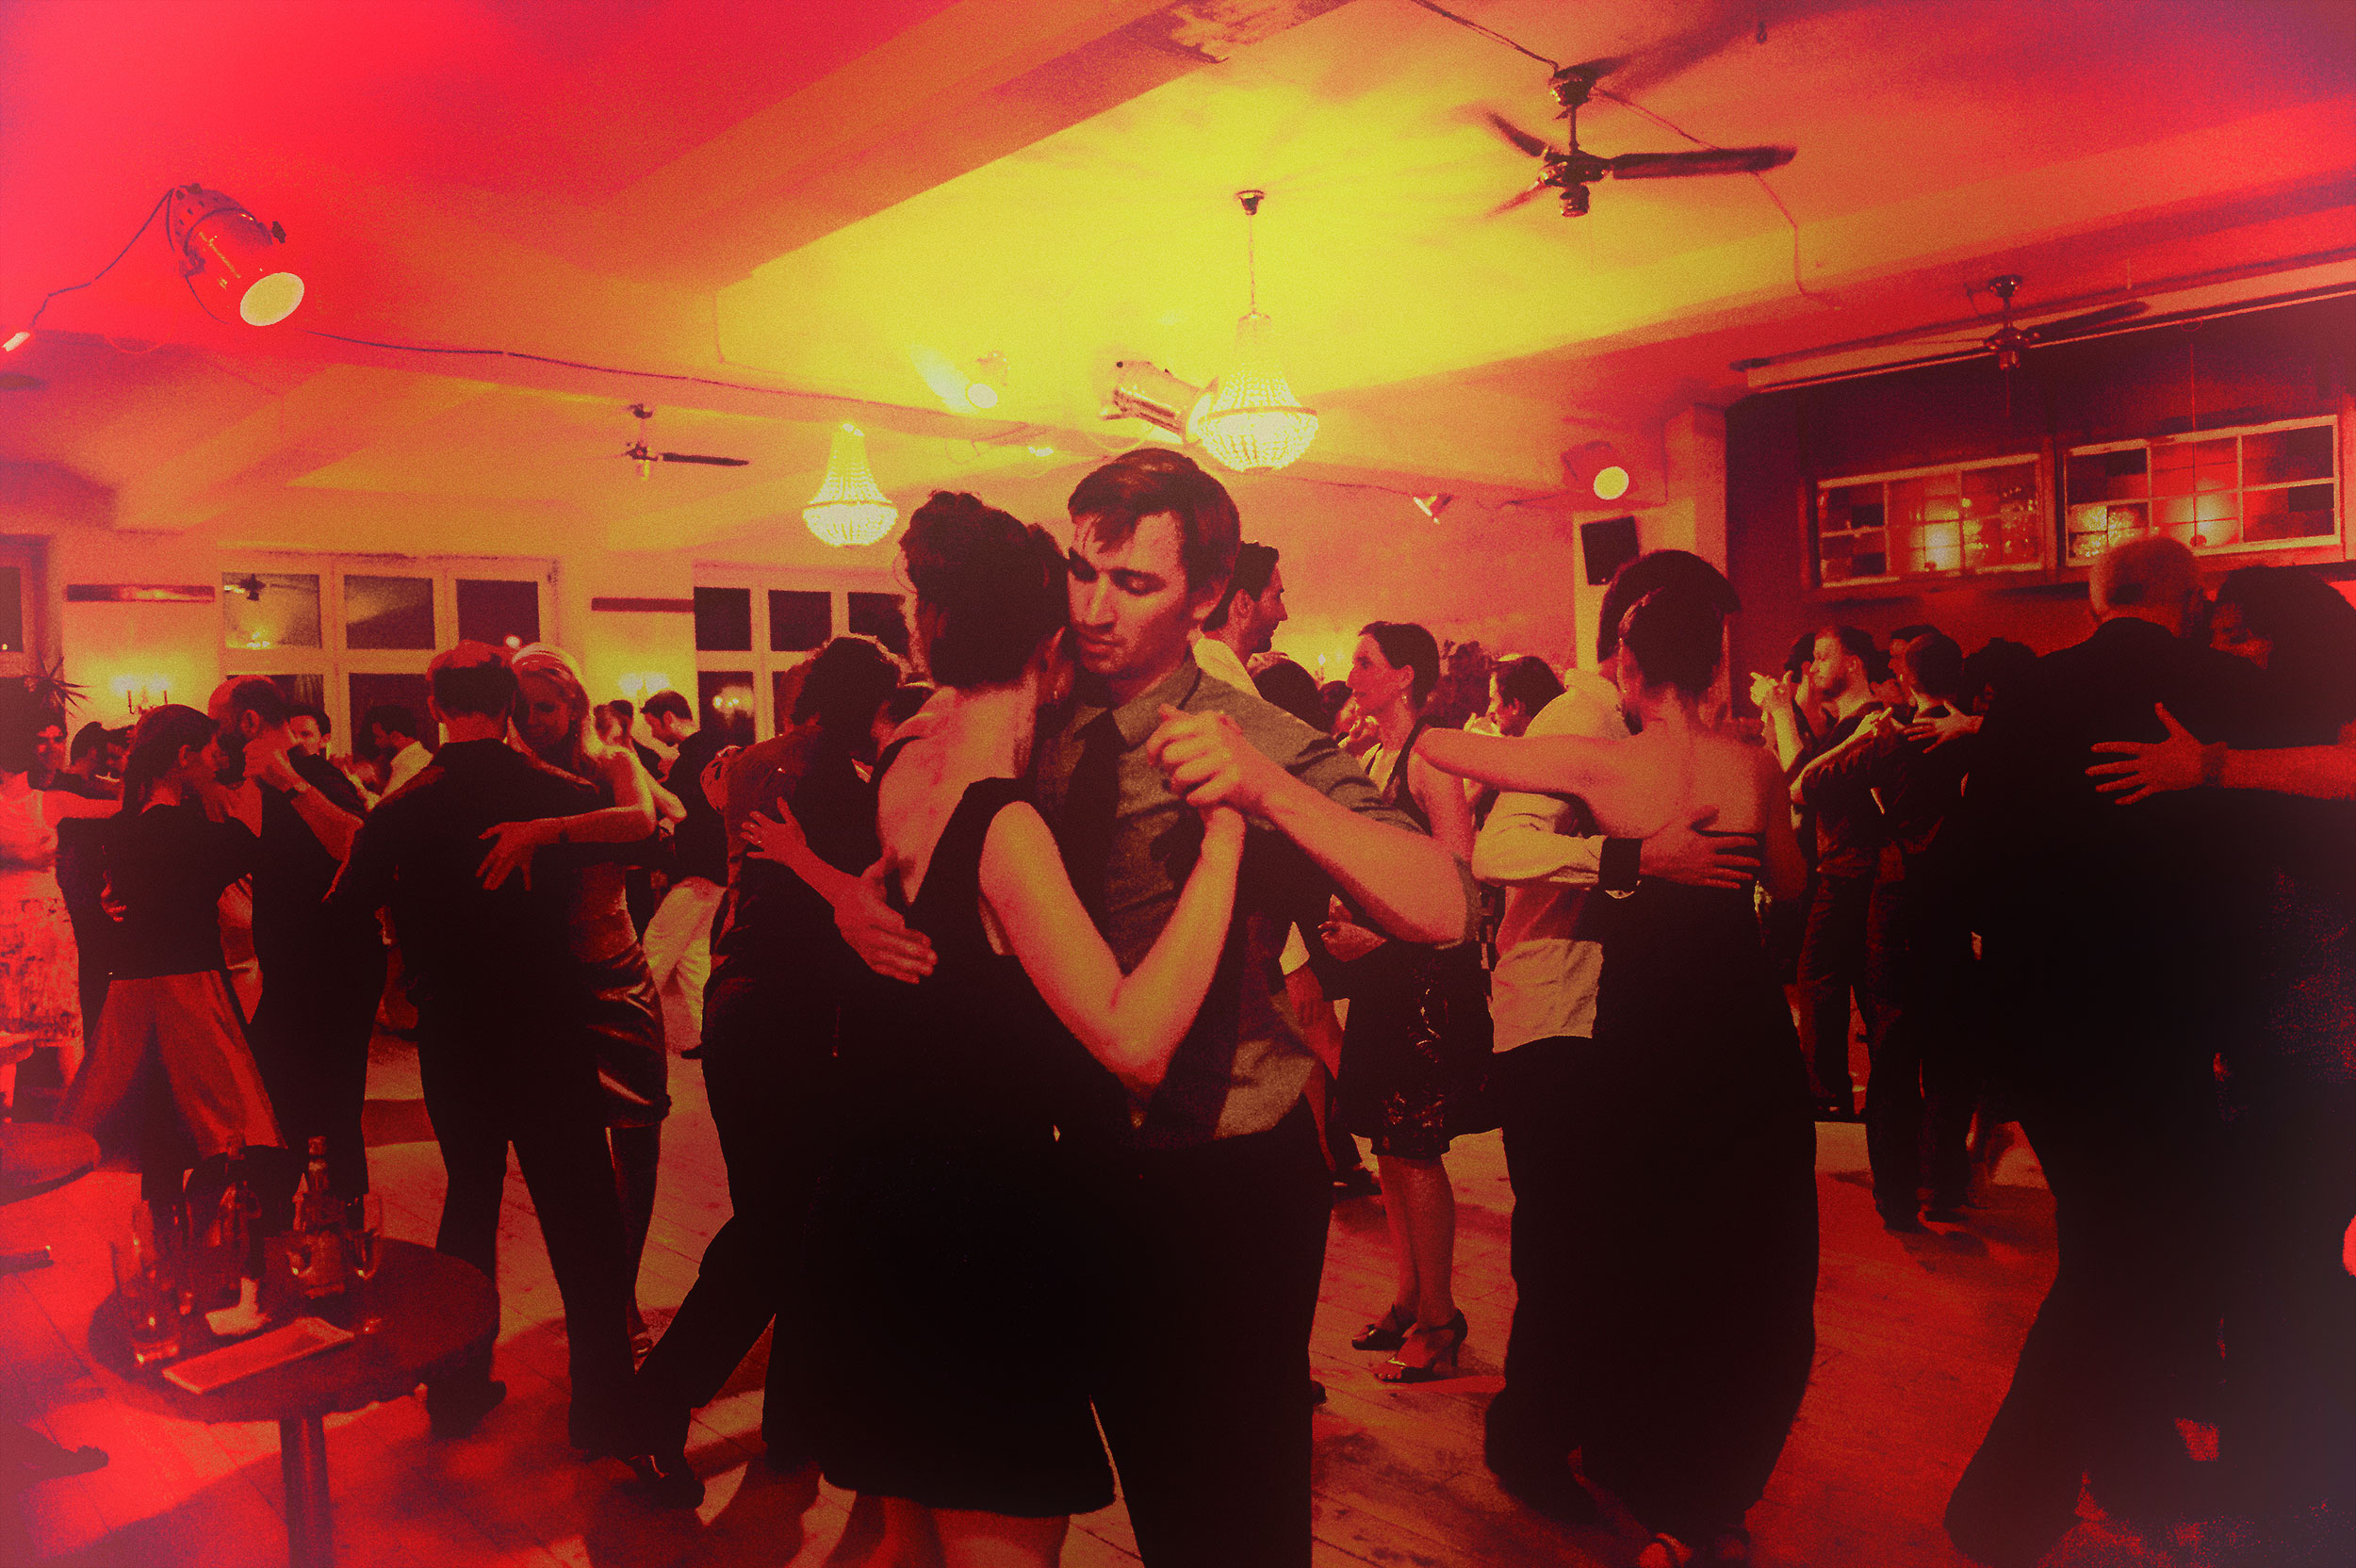 Volle Milonga im Nou: In warmes, rotes Licht gehüllt tanzen Menschen verschiedenster Colour miteinander